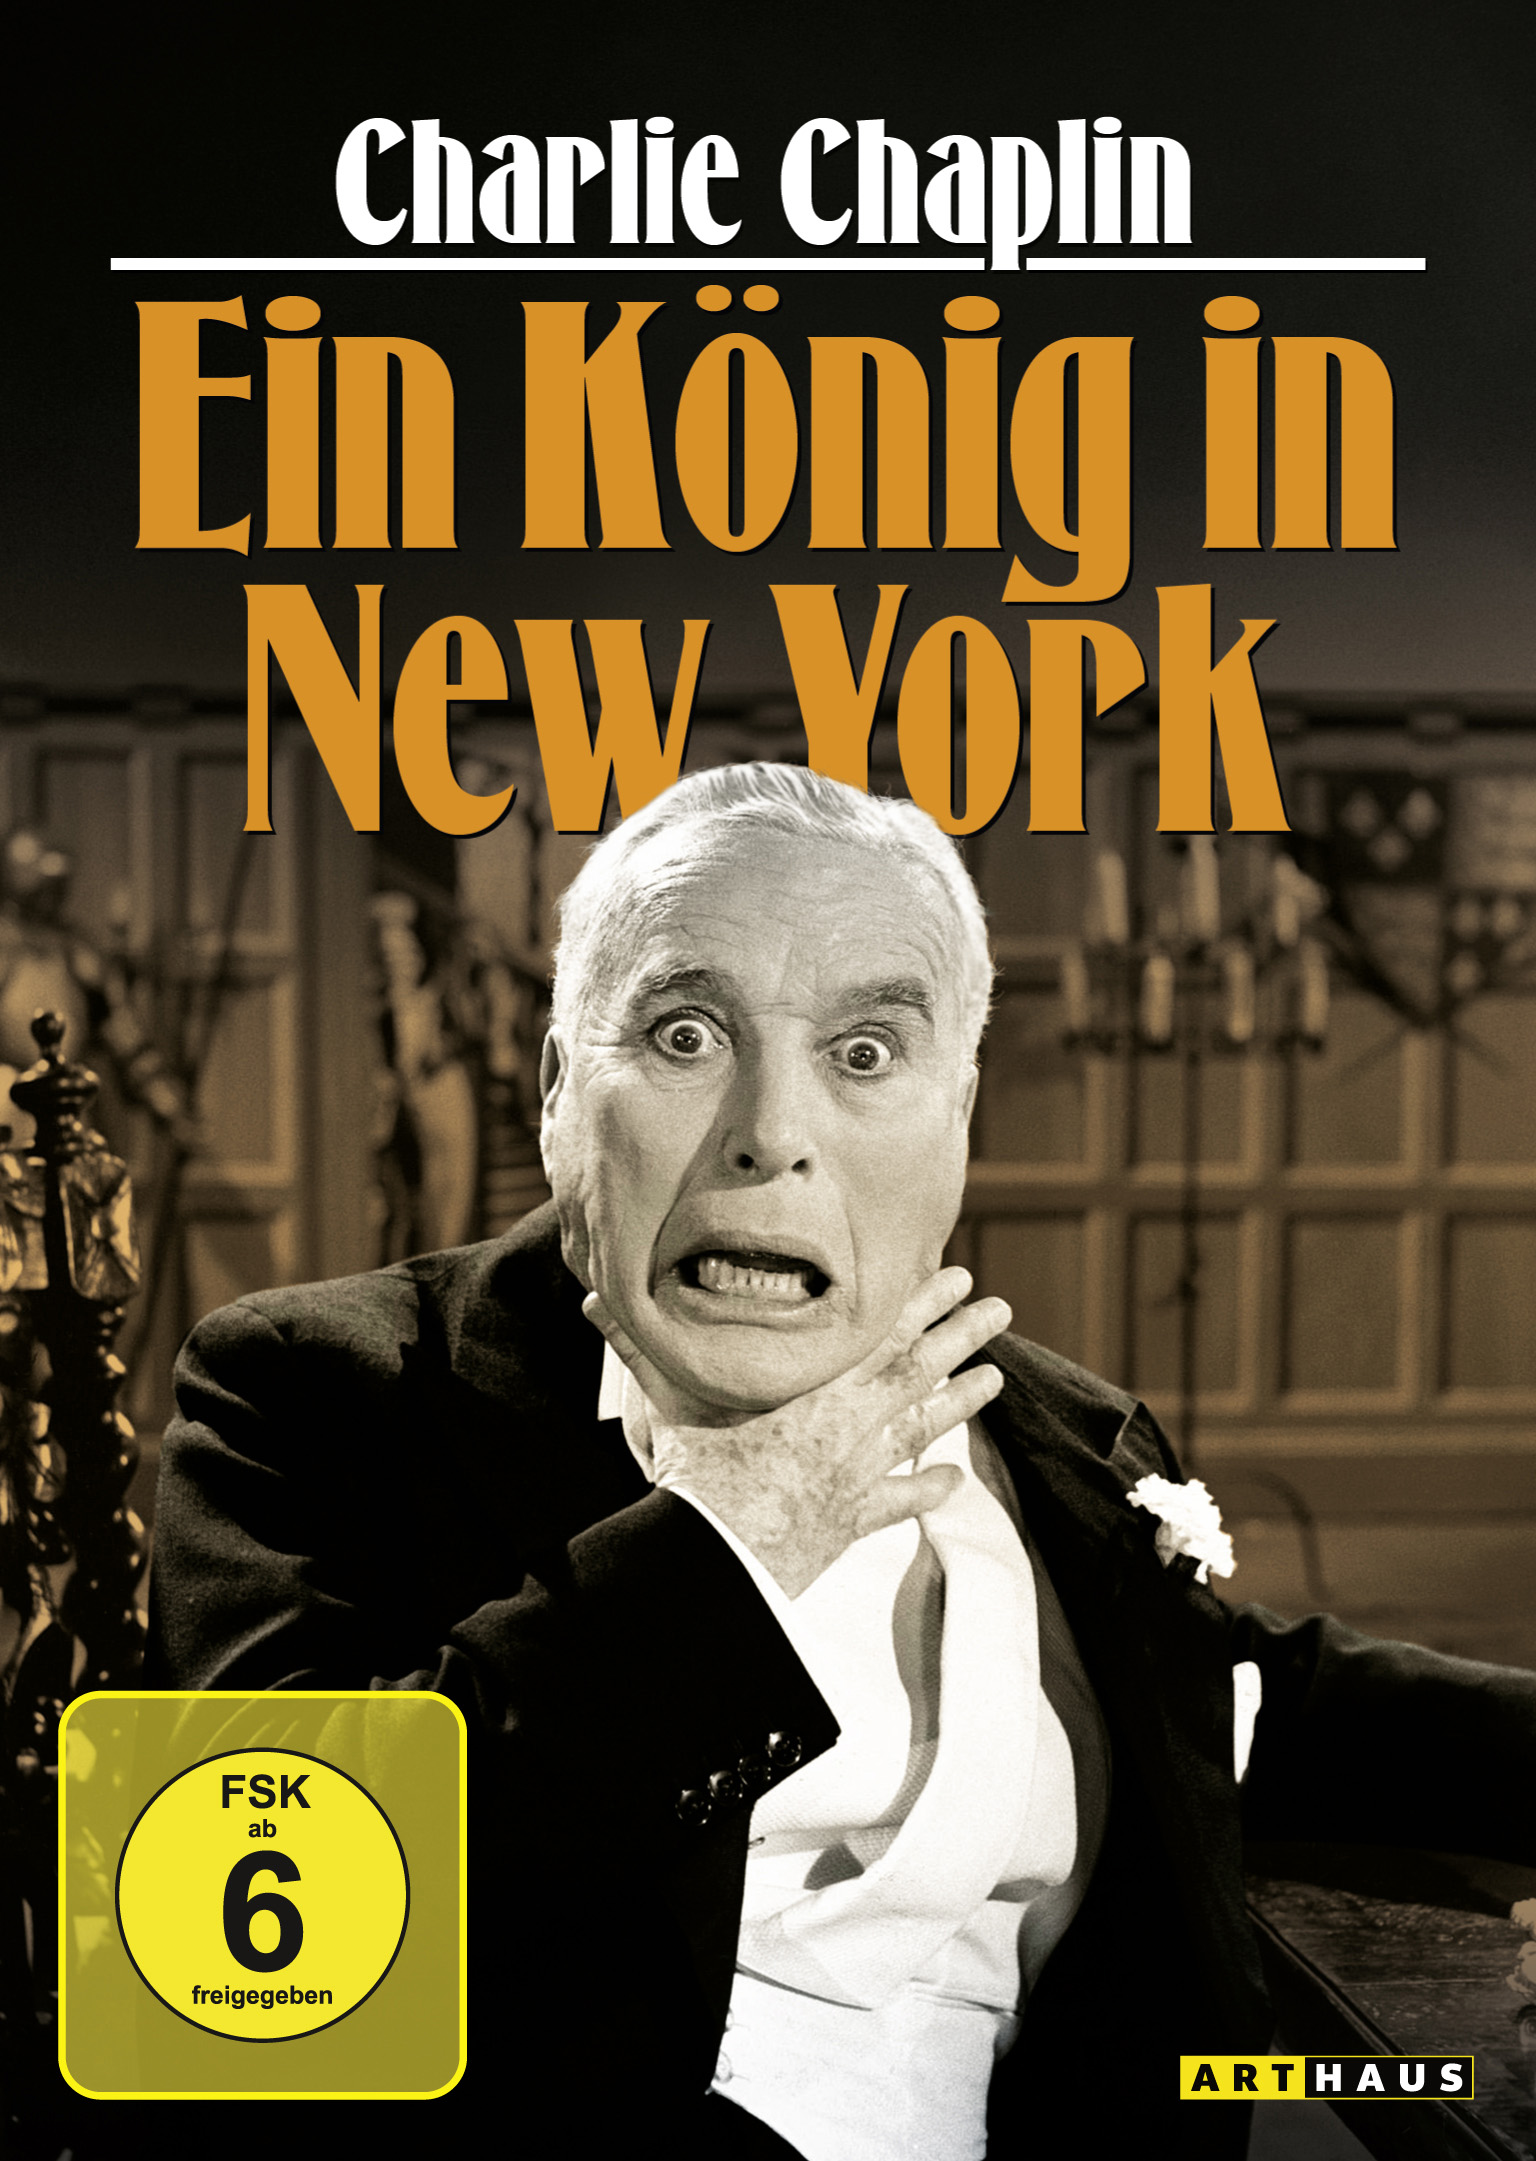 New in Ein York Charlie DVD - Chaplin König